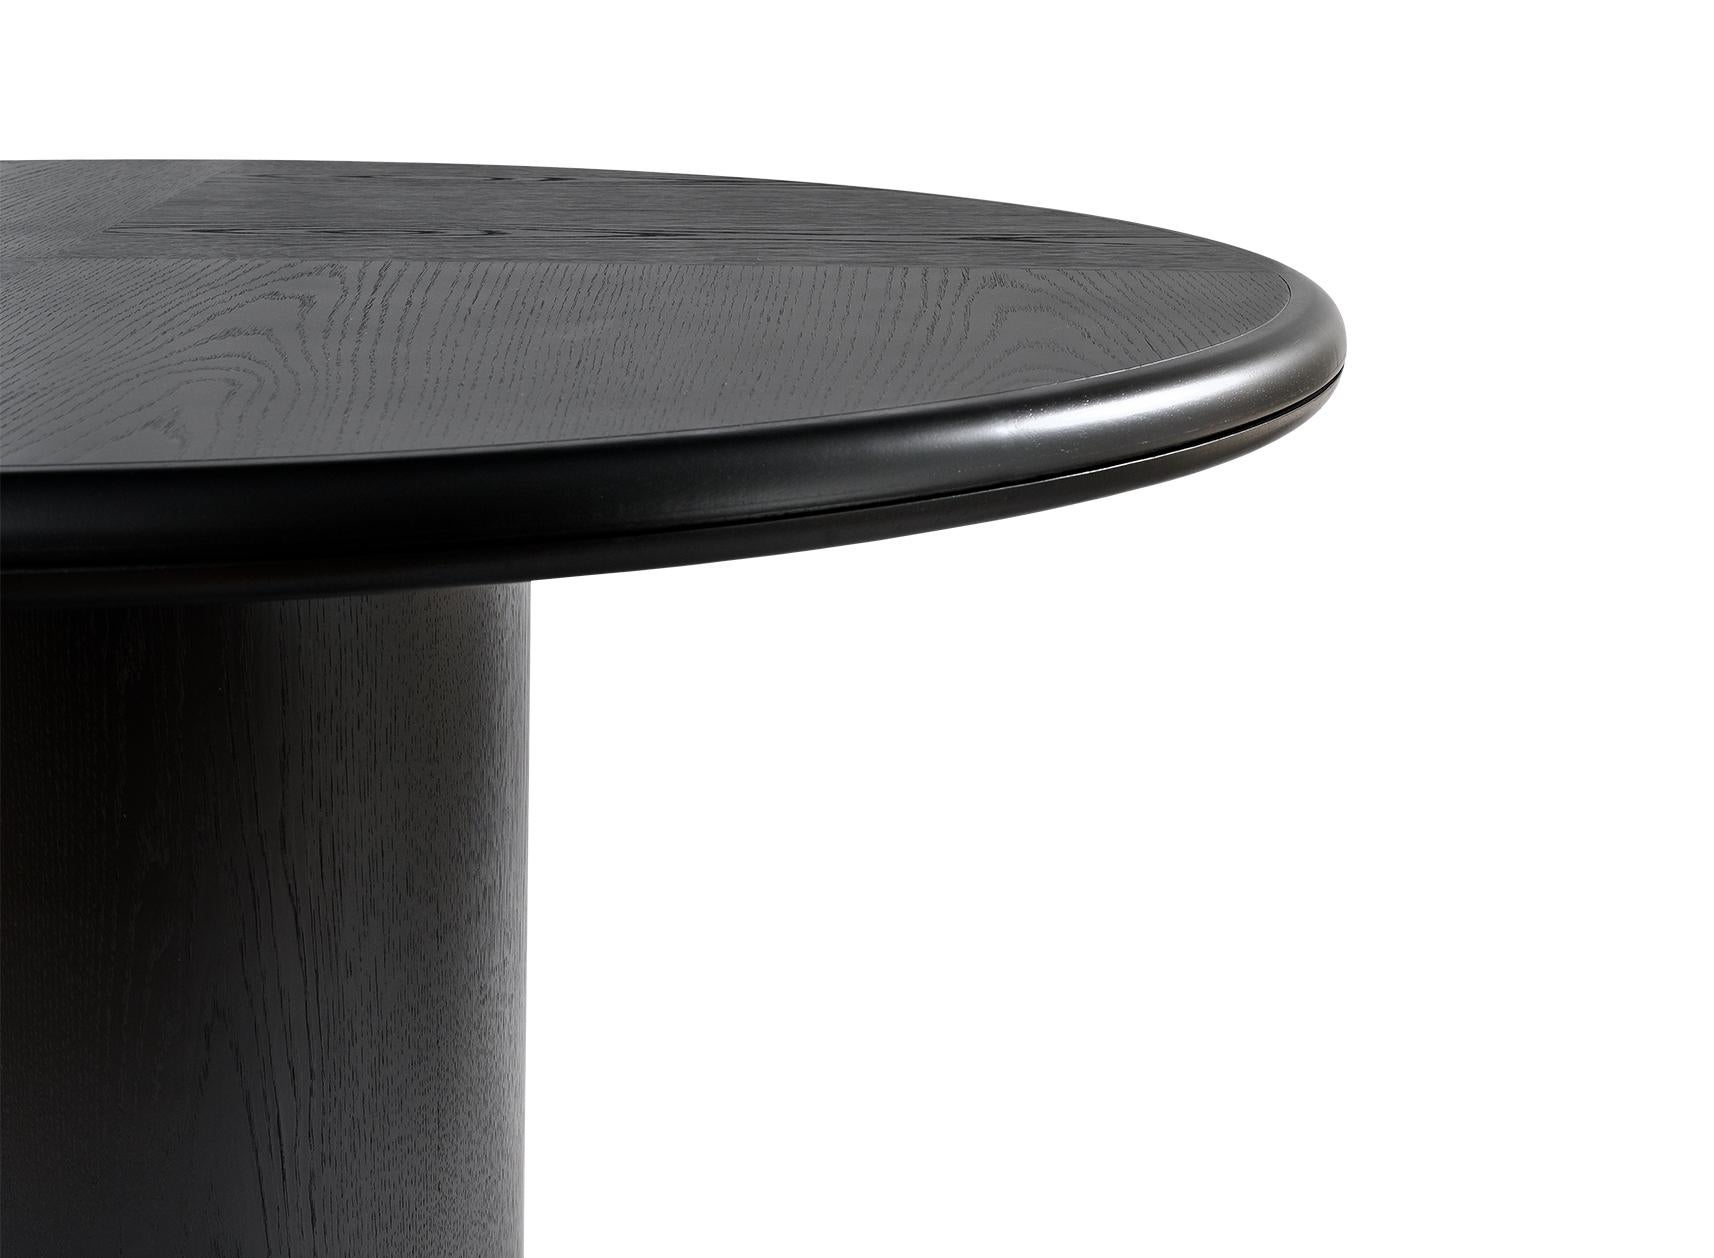 MOON
Chêne brossé noir, table à manger ronde.
Disponible en différentes dimensions.

Conçu par Buket Hoscan Bazman